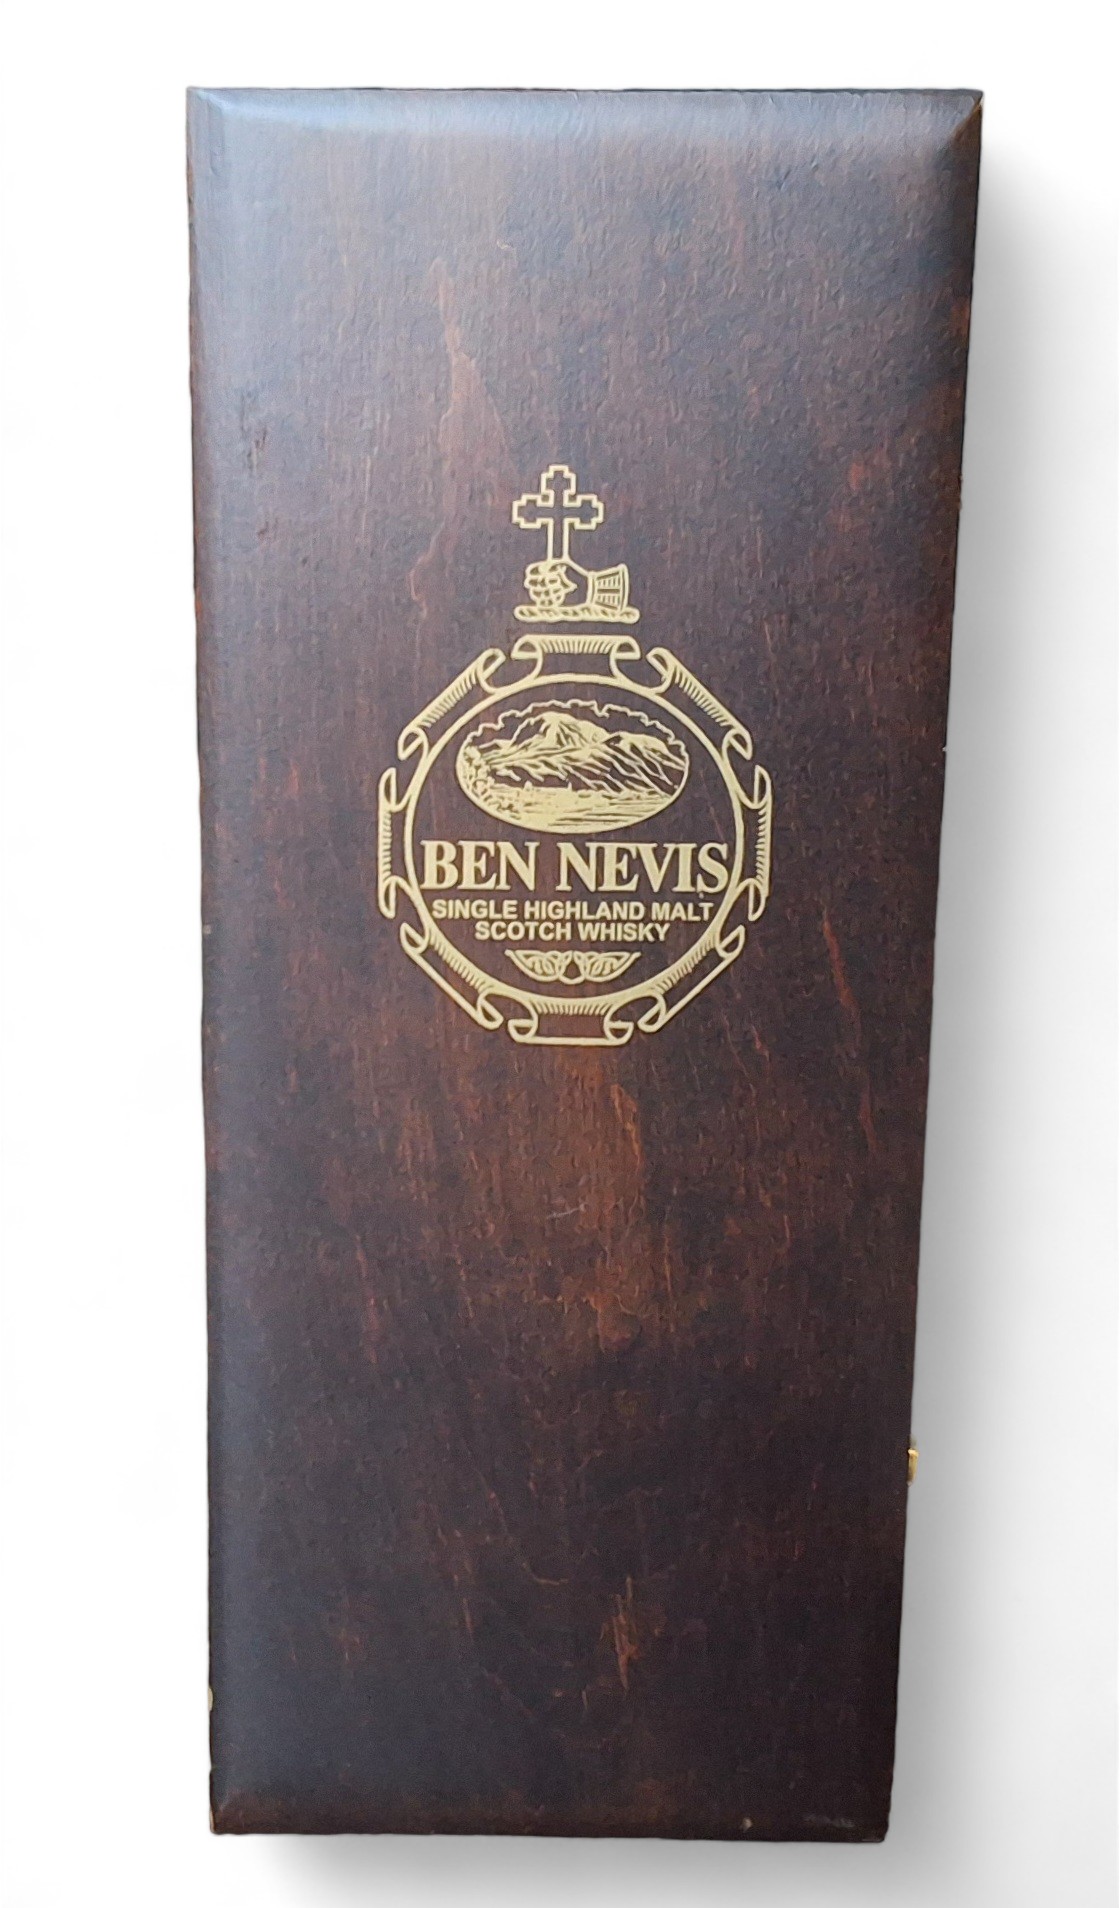 Ben Nevis Single Highland Malt Scotch Whisky, cask no 98/35/13, distilled December 1984, vatted in - Image 2 of 2